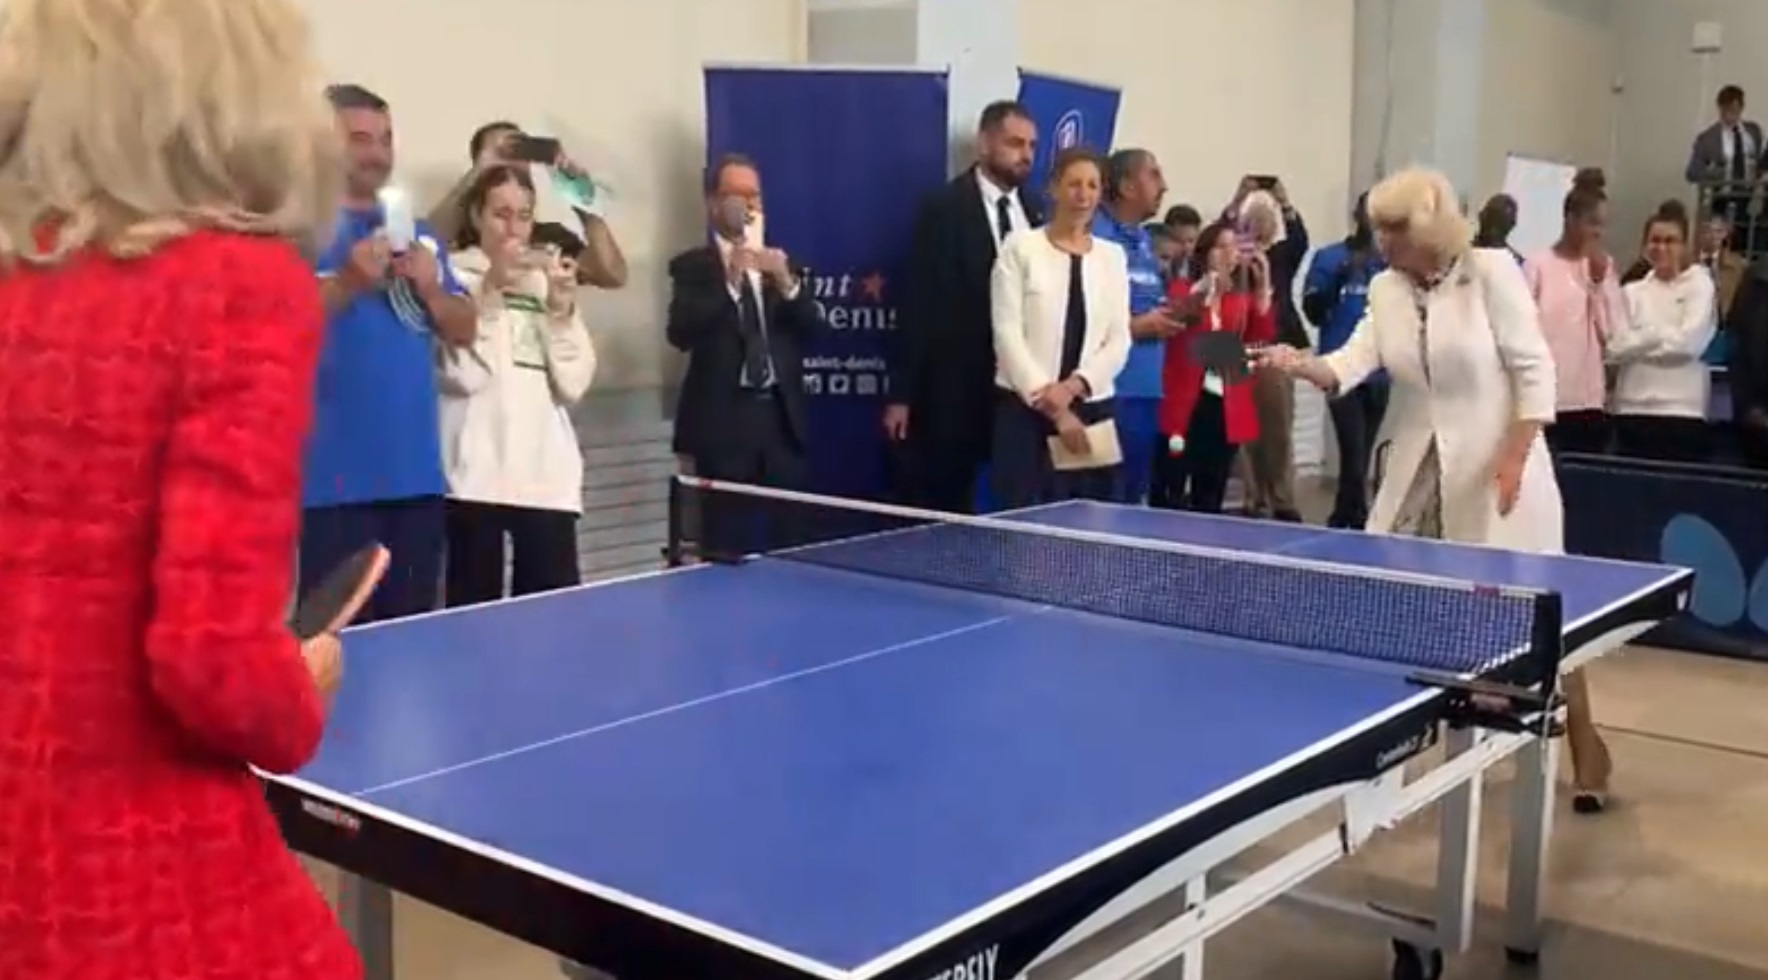 La reina de Inglaterra y la primera dama francesa juegan al tenis de mesa